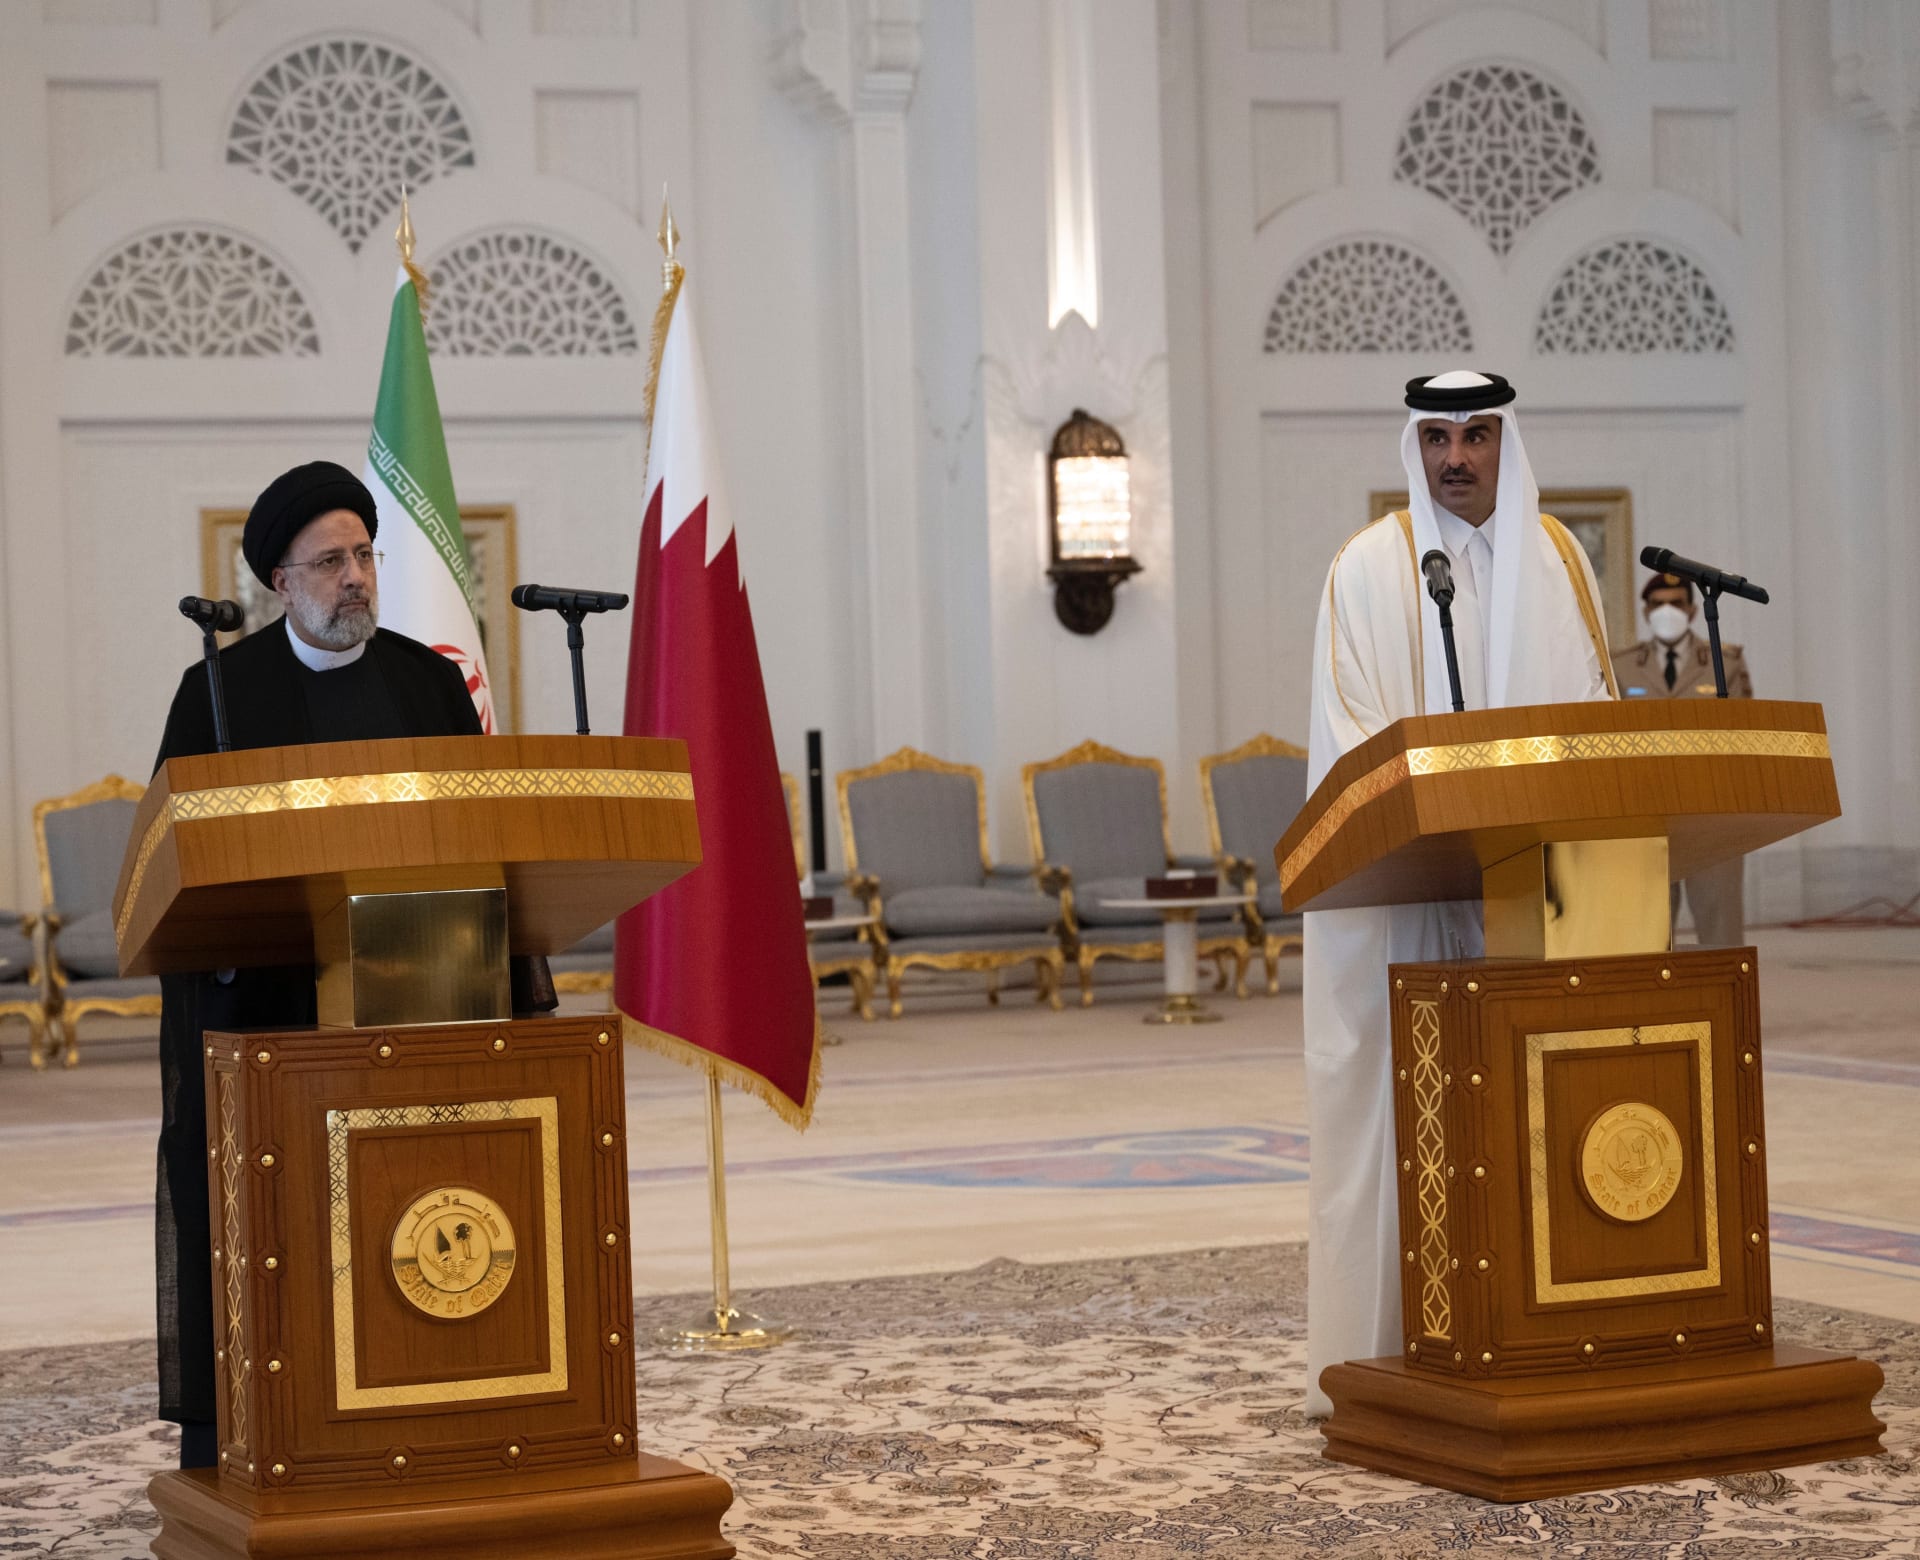 إبراهيم رئيسي يزور قطر في أول زيارة لرئيس إيراني منذ أكثر من عقد